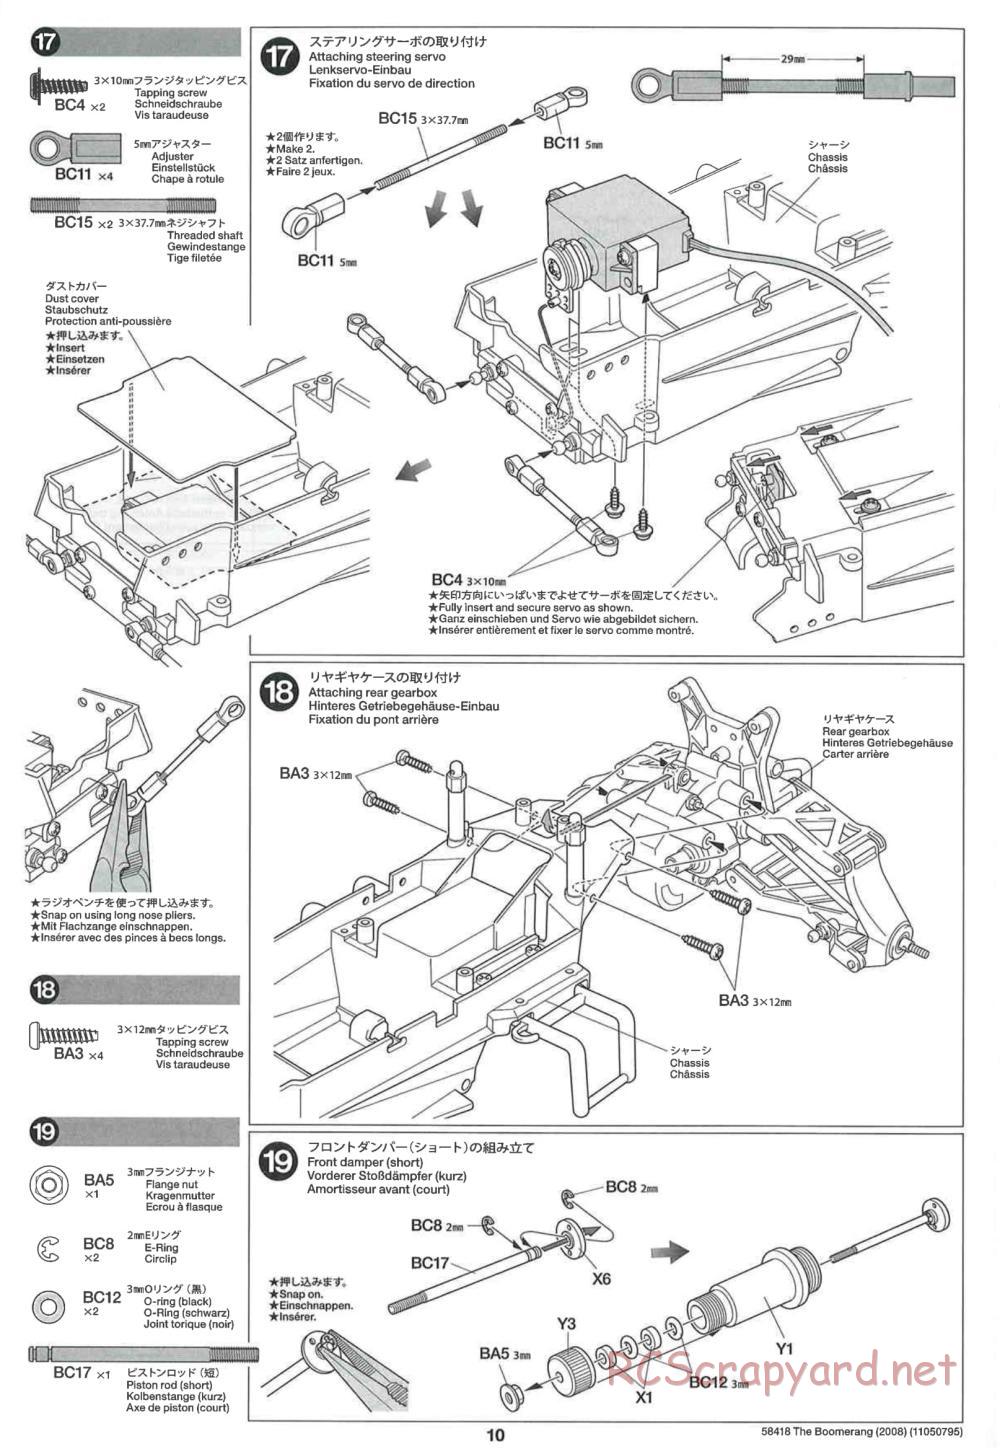 Tamiya - The Boomerang 2008 Chassis - Manual - Page 10